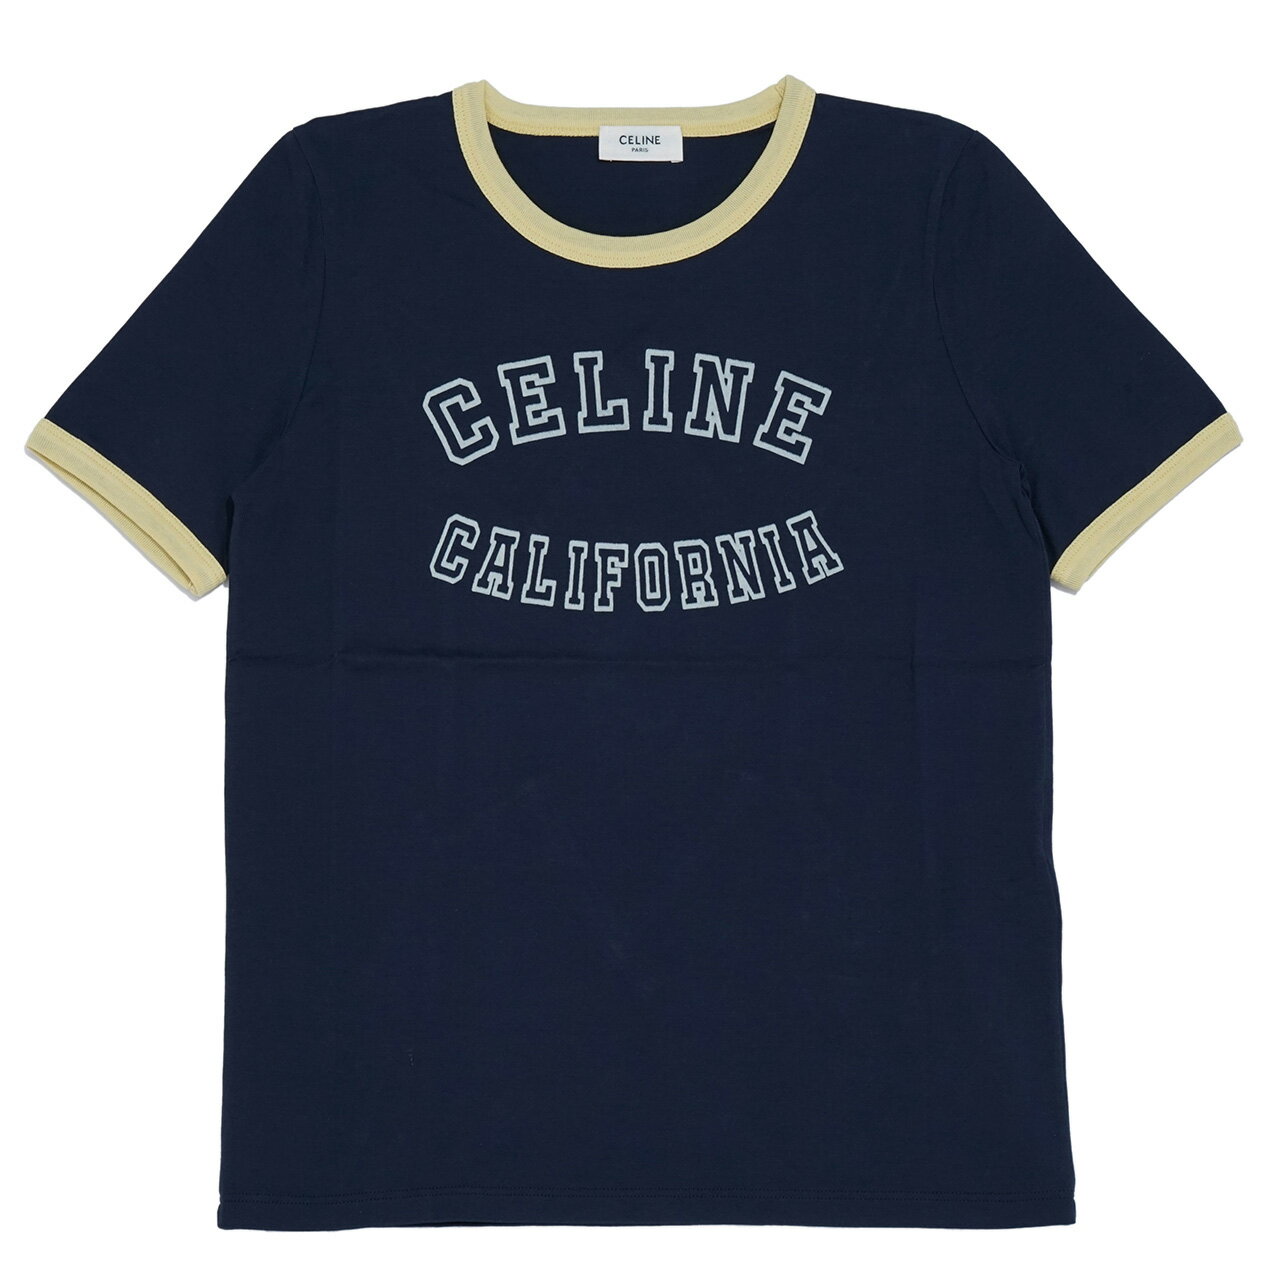 CELINE セリーヌ X17H671Q カリフォルニア70 039 STシャツコットンジャージー Tシャツ レディース 半そで お洒落 ロゴ